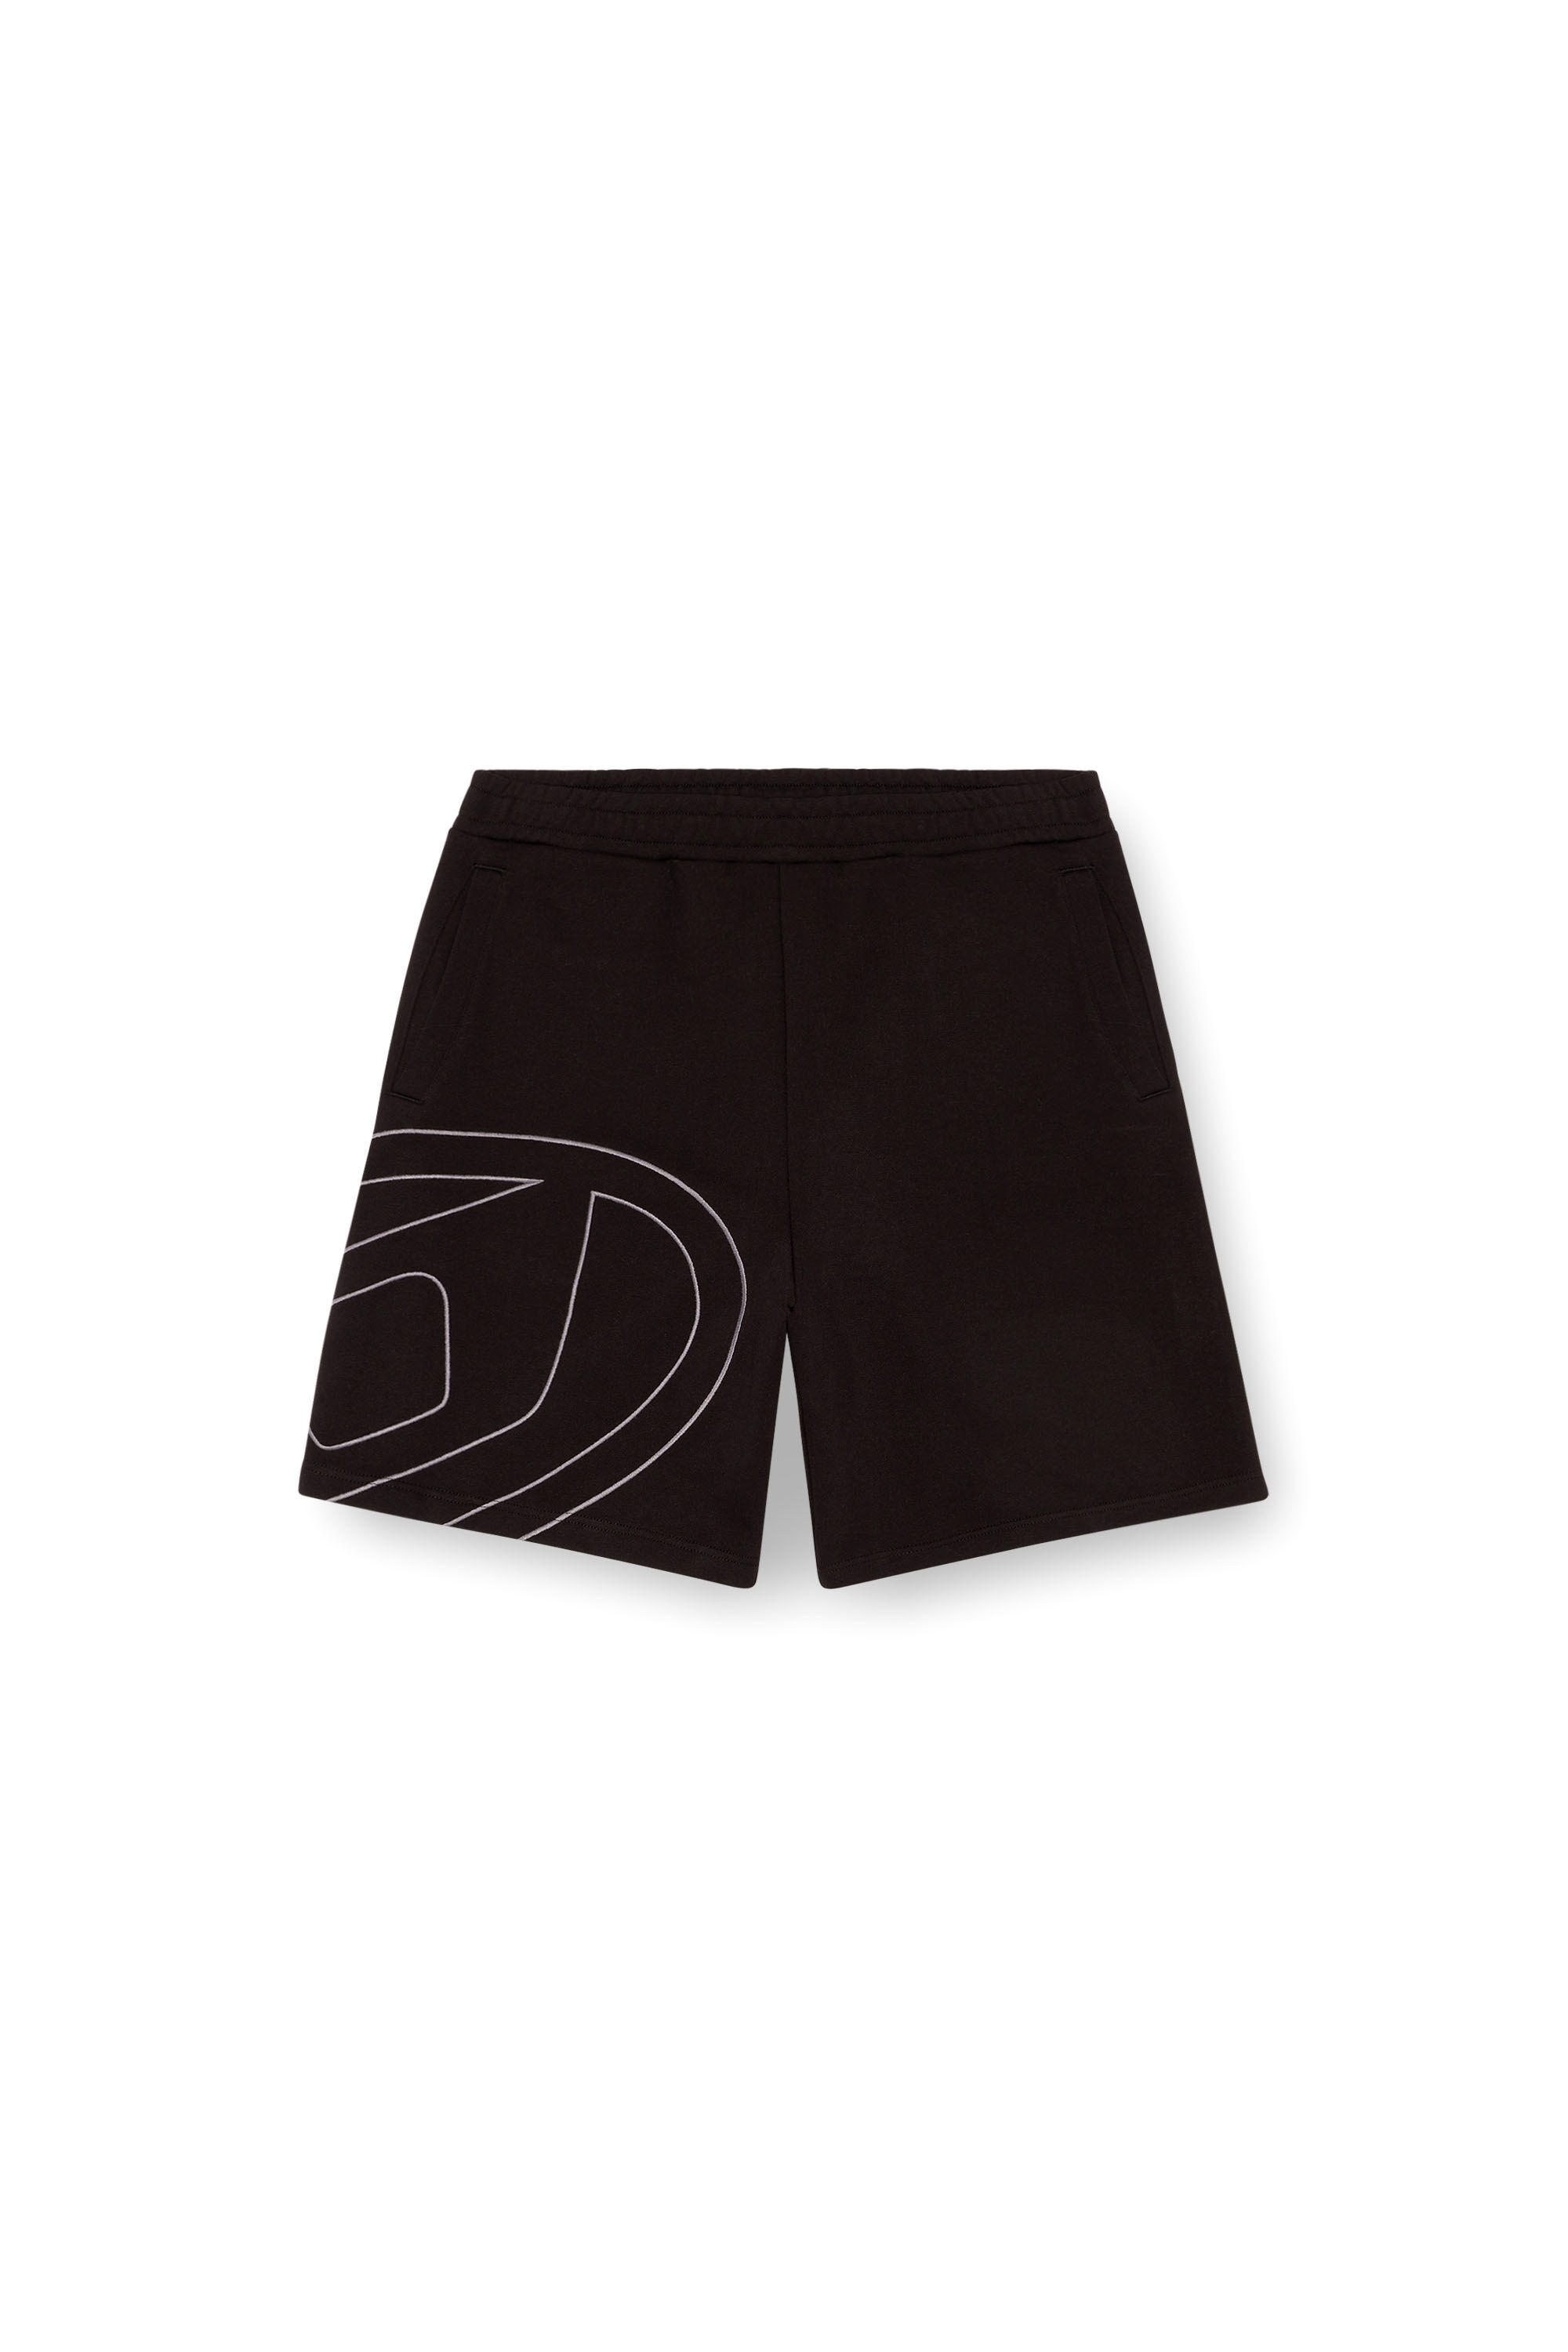 Diesel - P-CROW-MEGOVAL, Hombre Pantalones deportivos cortos con logotipo D grande in Negro - Image 2